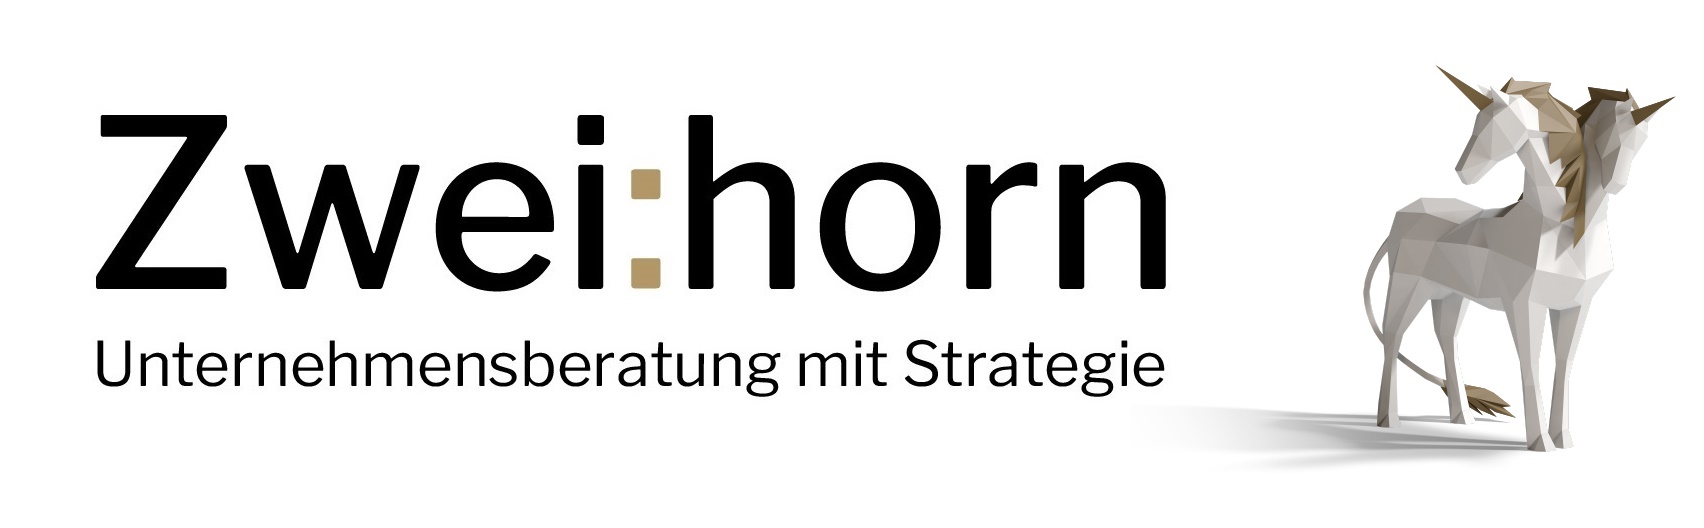 Zweihorn Unternehmensberatung GmbH